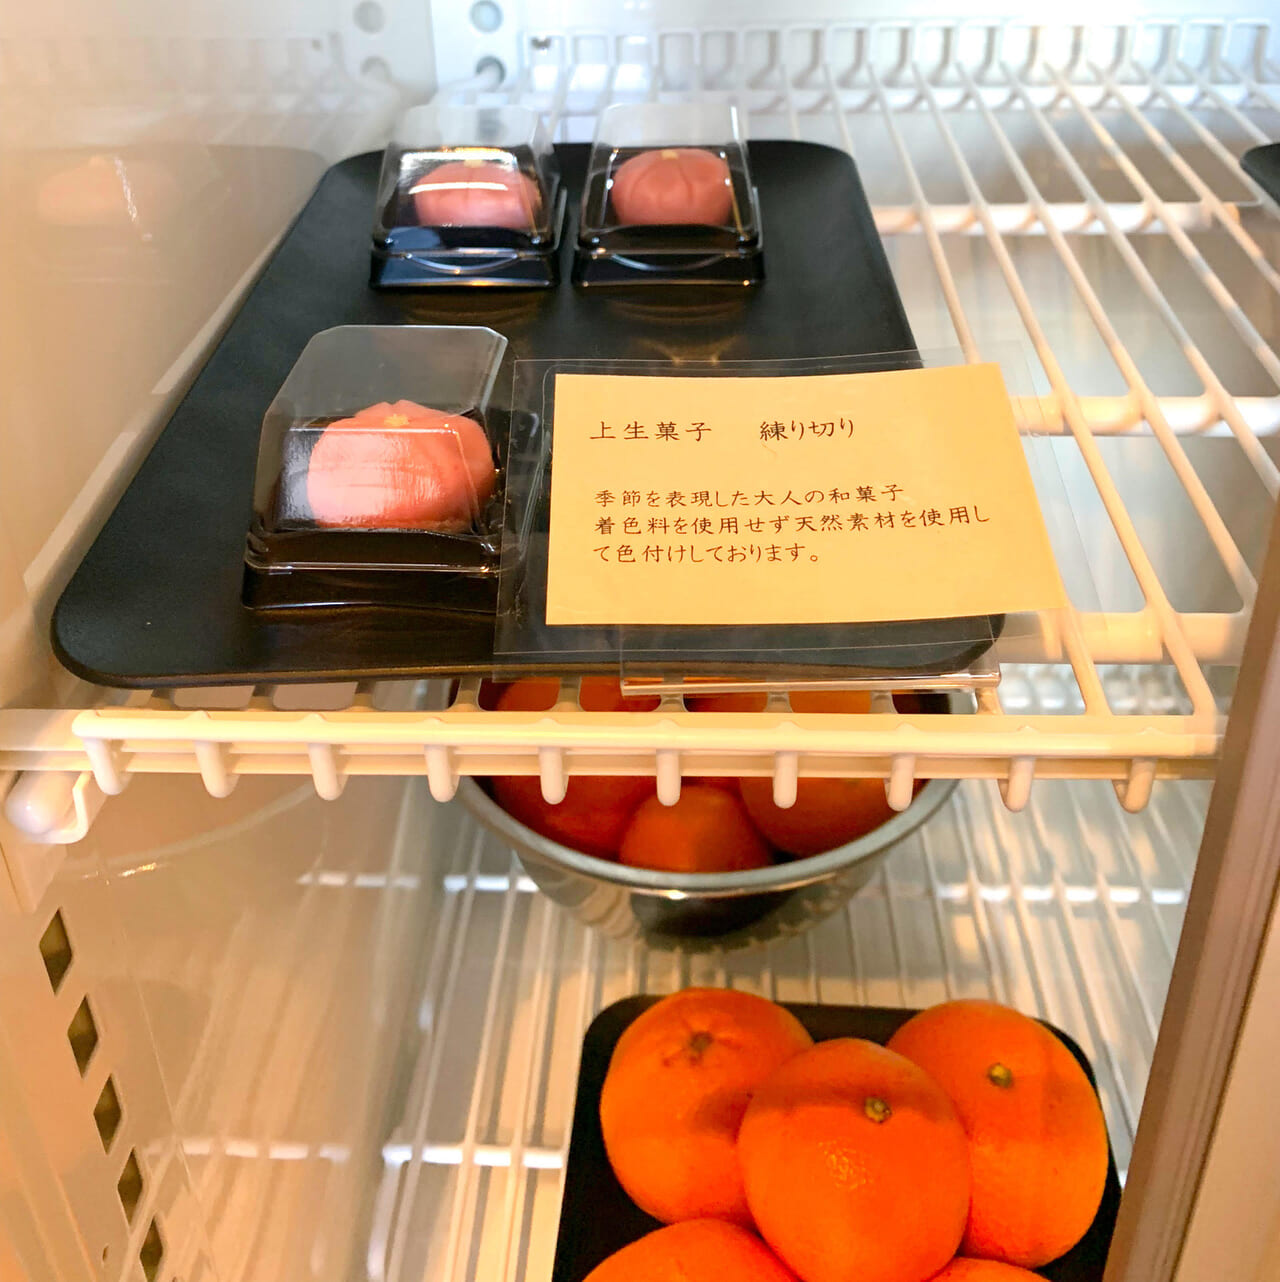 郷新屋敷町に手作りの美味しい和菓子などを購入できるお店「旬菓 槐(えんじゅ)」がオープンしていました!